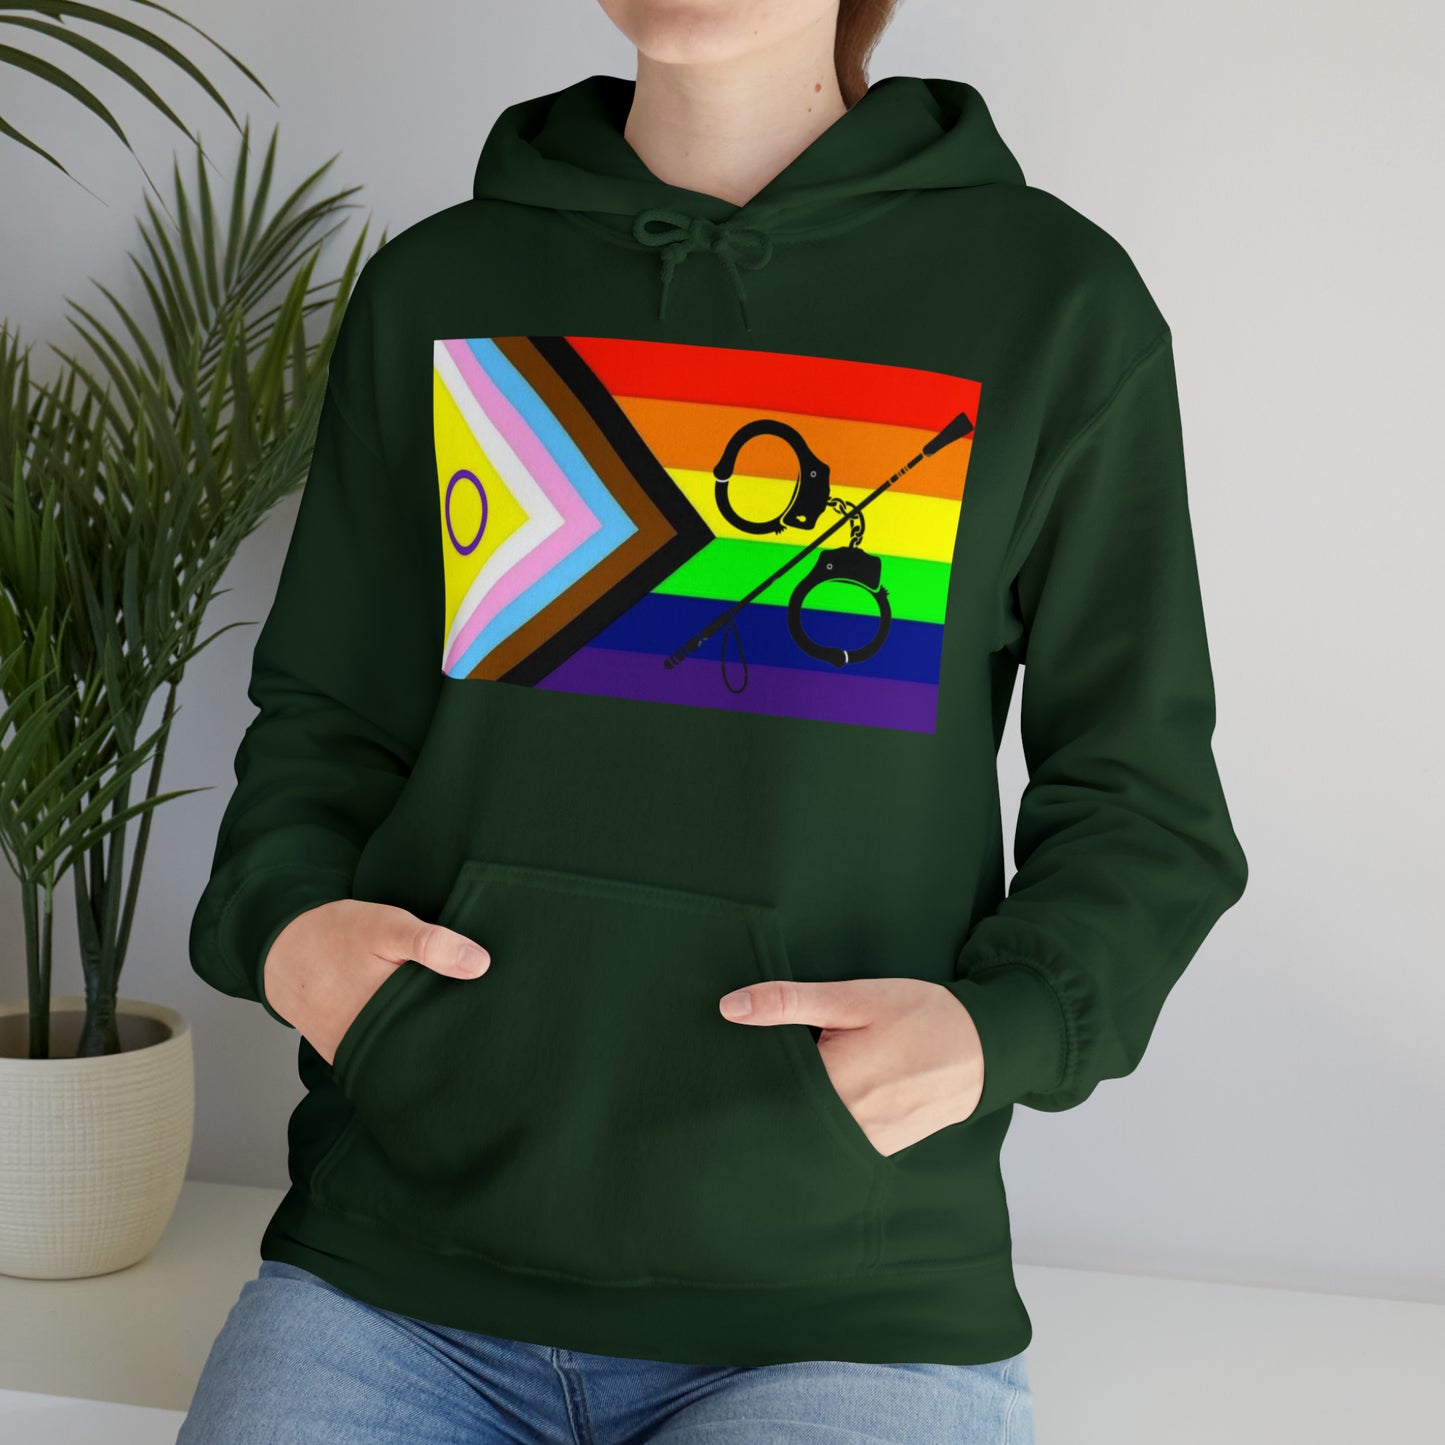 Kink Pride Unisex Hooded Sweatshirt